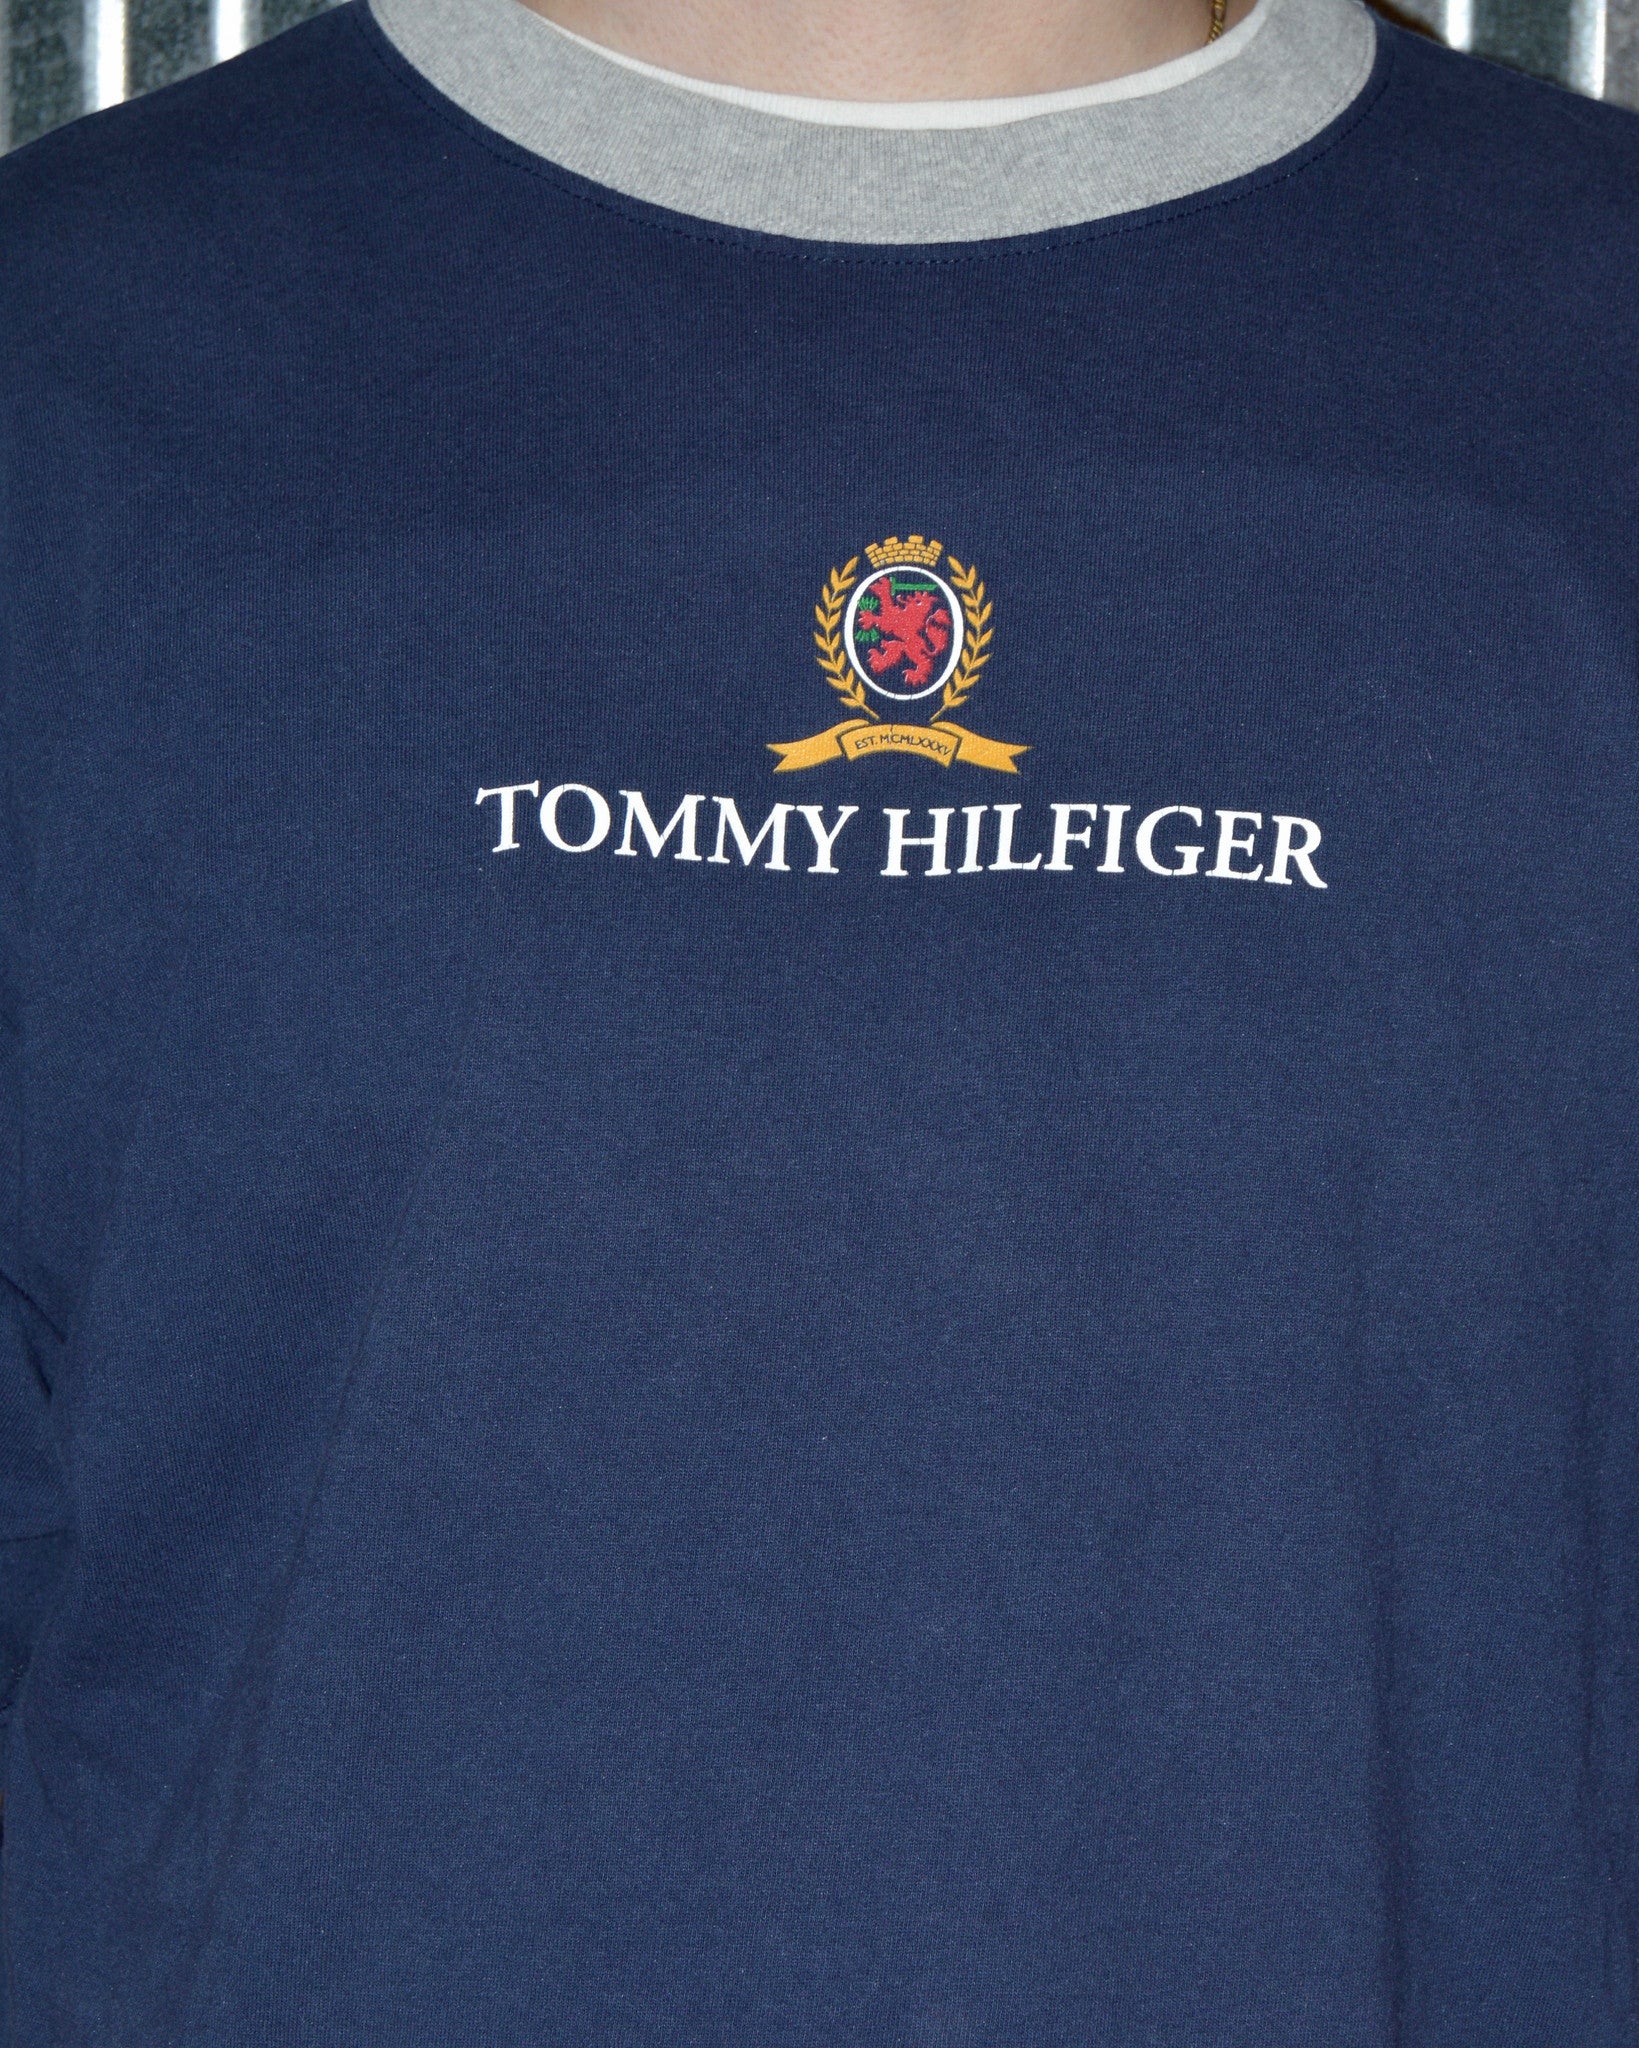 tommy hilfiger crest logo